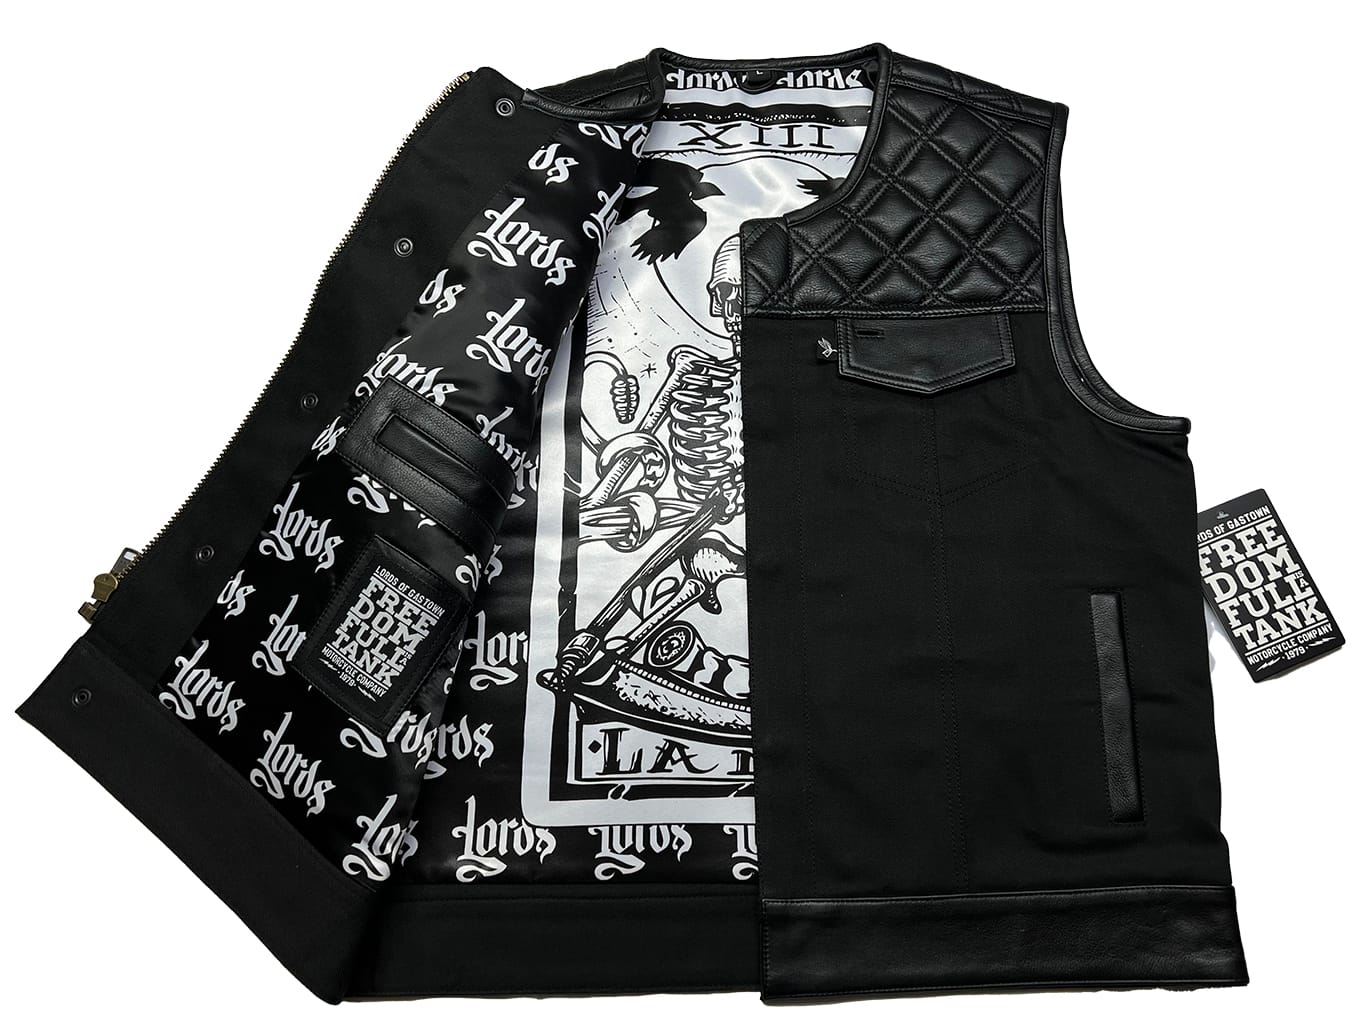 Lords x Cleaver Culture Moto Vest - Black